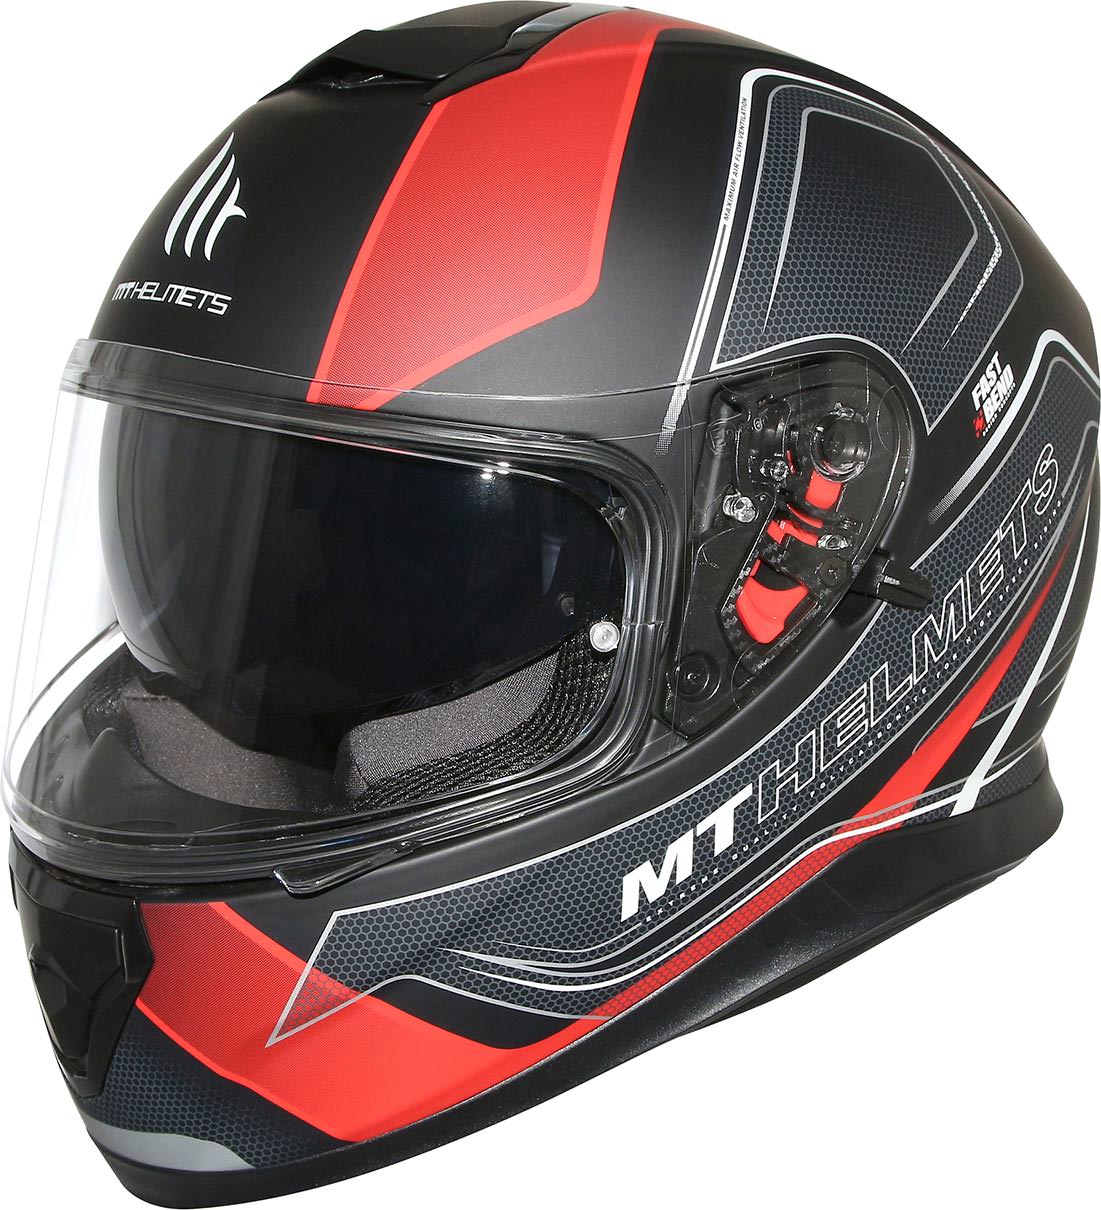 Le MT Thunder 3 SV est un véritable casque intégral Racing... vendu seulement 89€ !